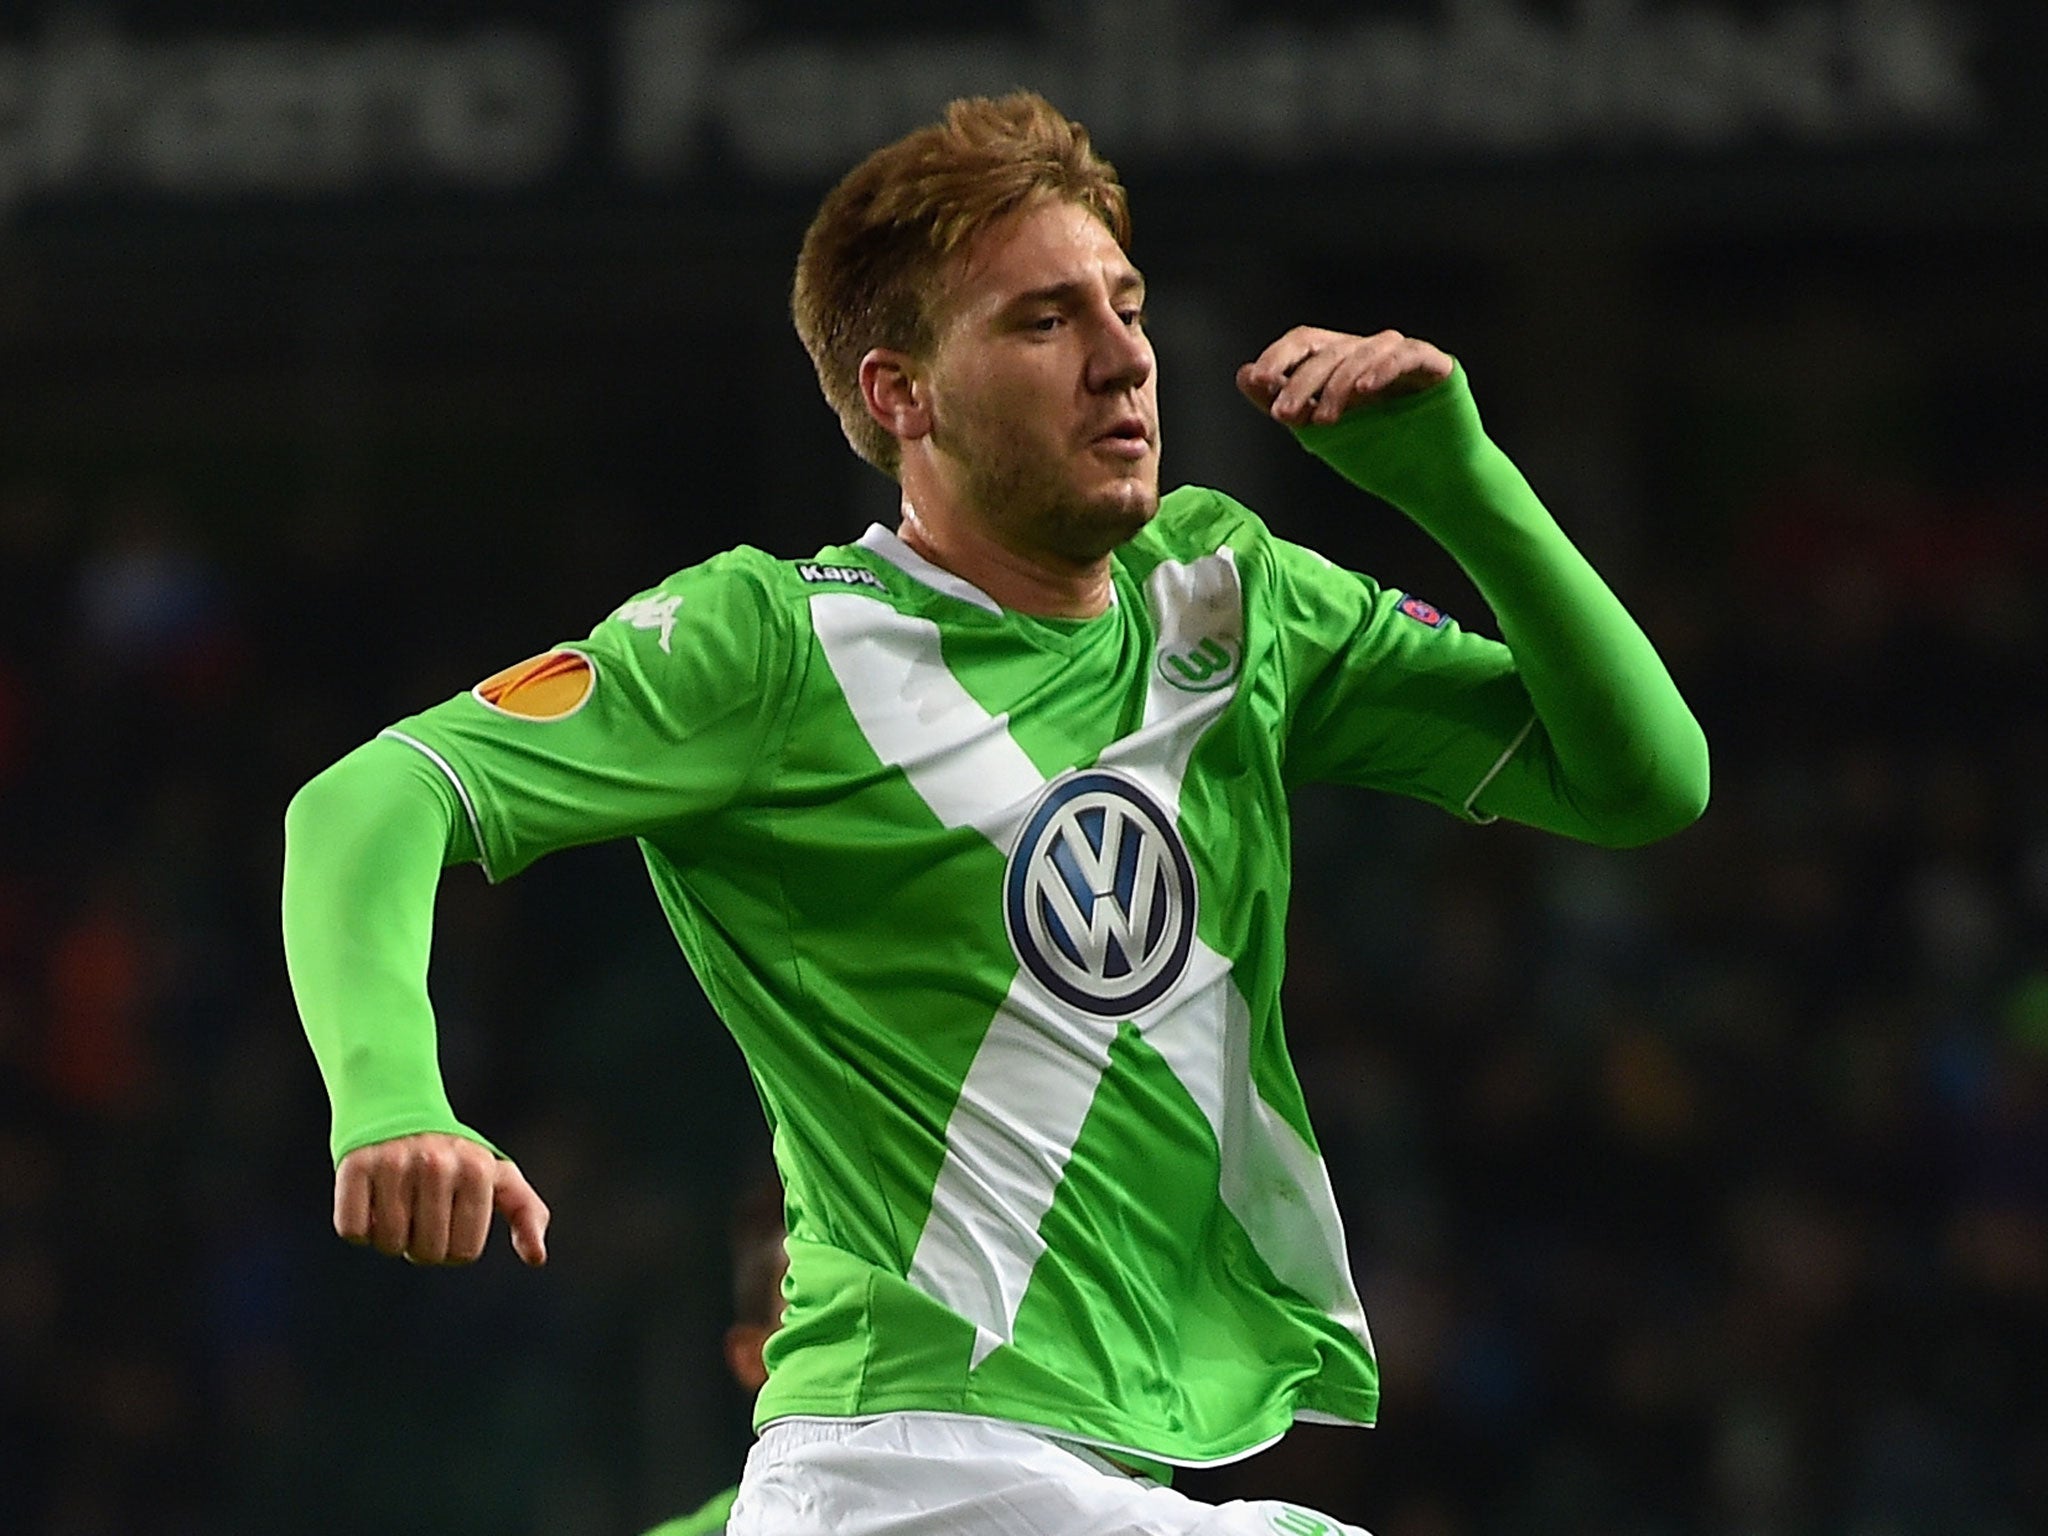 Nicklas Bendtner celebrates for Wolfsburg against FC Krasnodar earlier this month